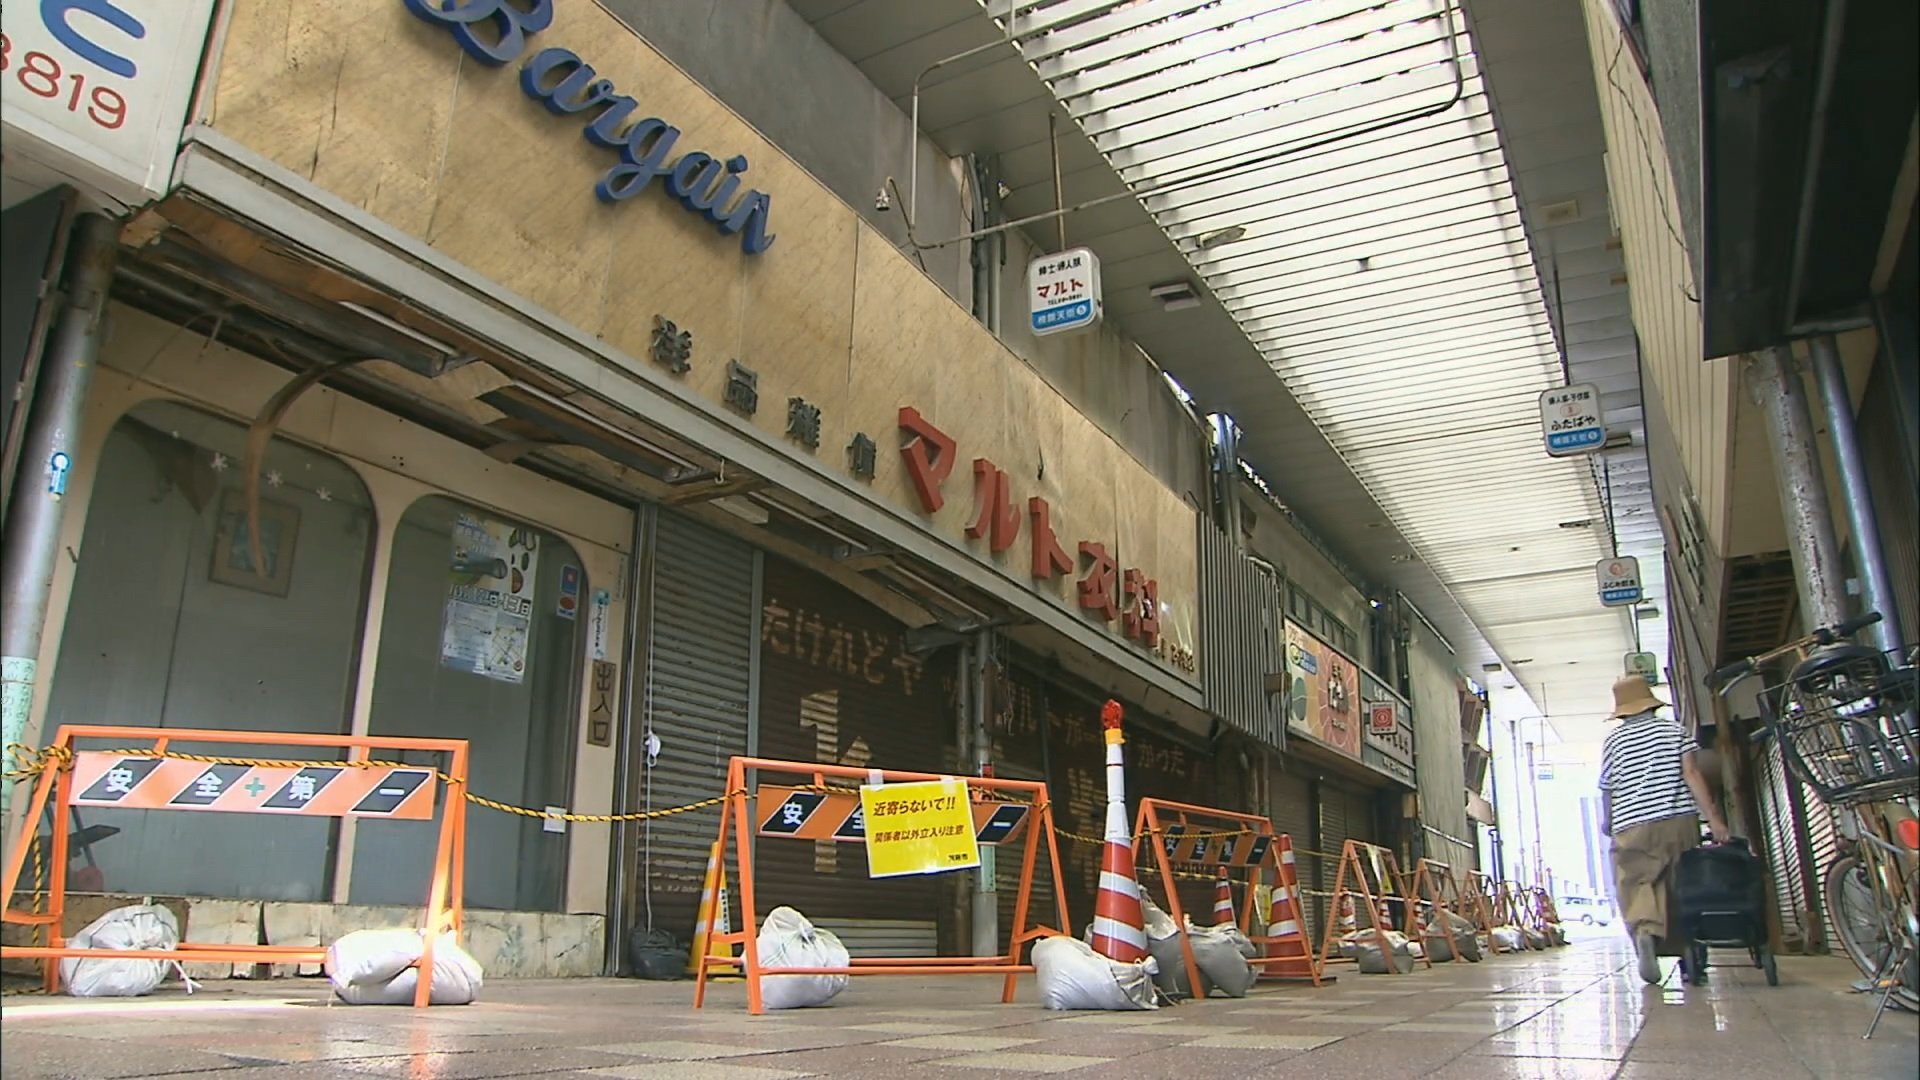 上から物が落ちてくる 異臭がする かつて日本一のアーケード商店街が崩壊寸前に 苦情相次ぎ対策へ Obsニュース